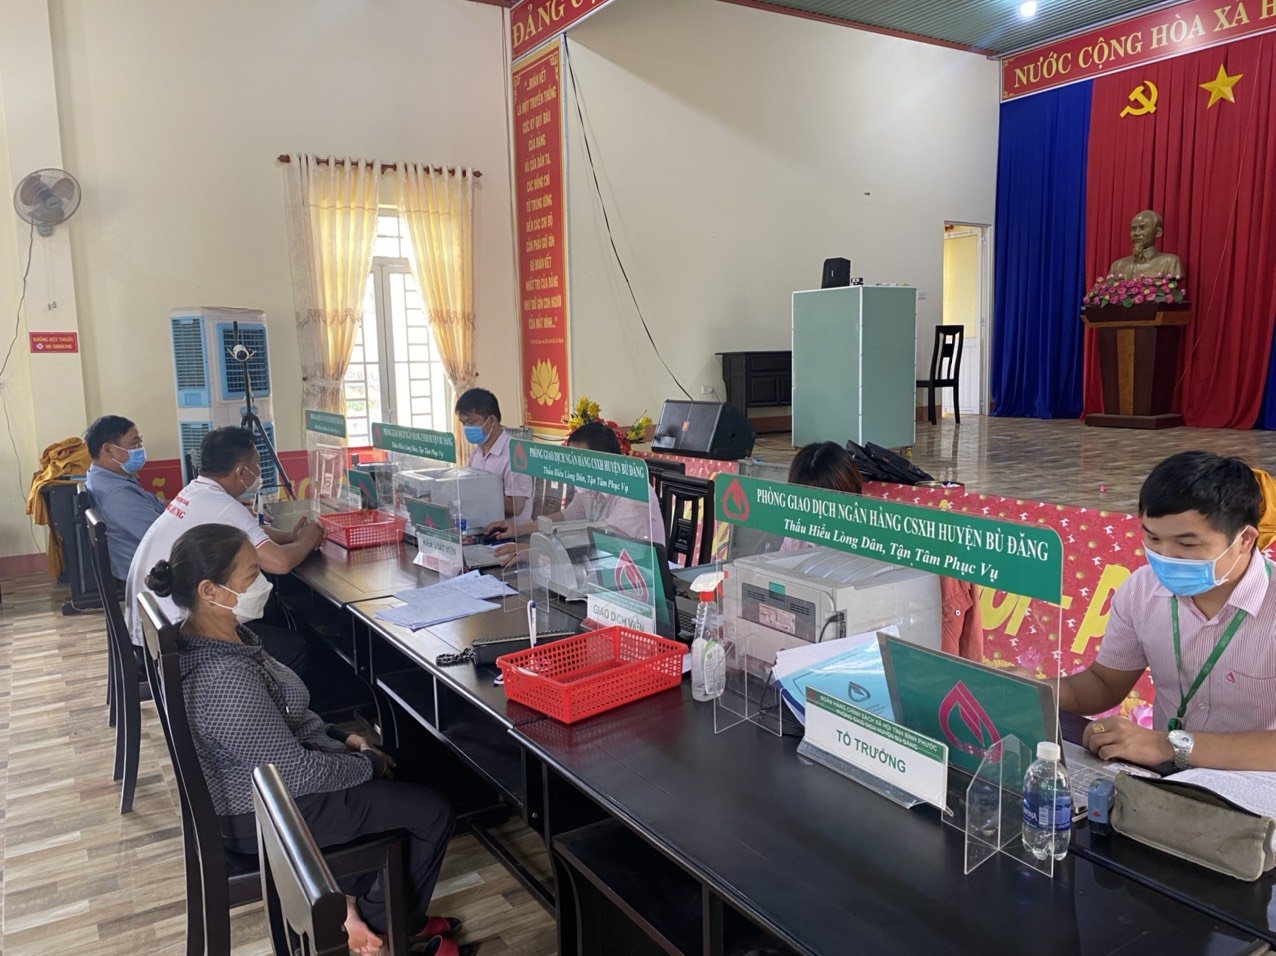 Hình ảnh một phiên giao dịch tại xã của Ngân hàng Chính sách xã hội huyện Bù Đăng